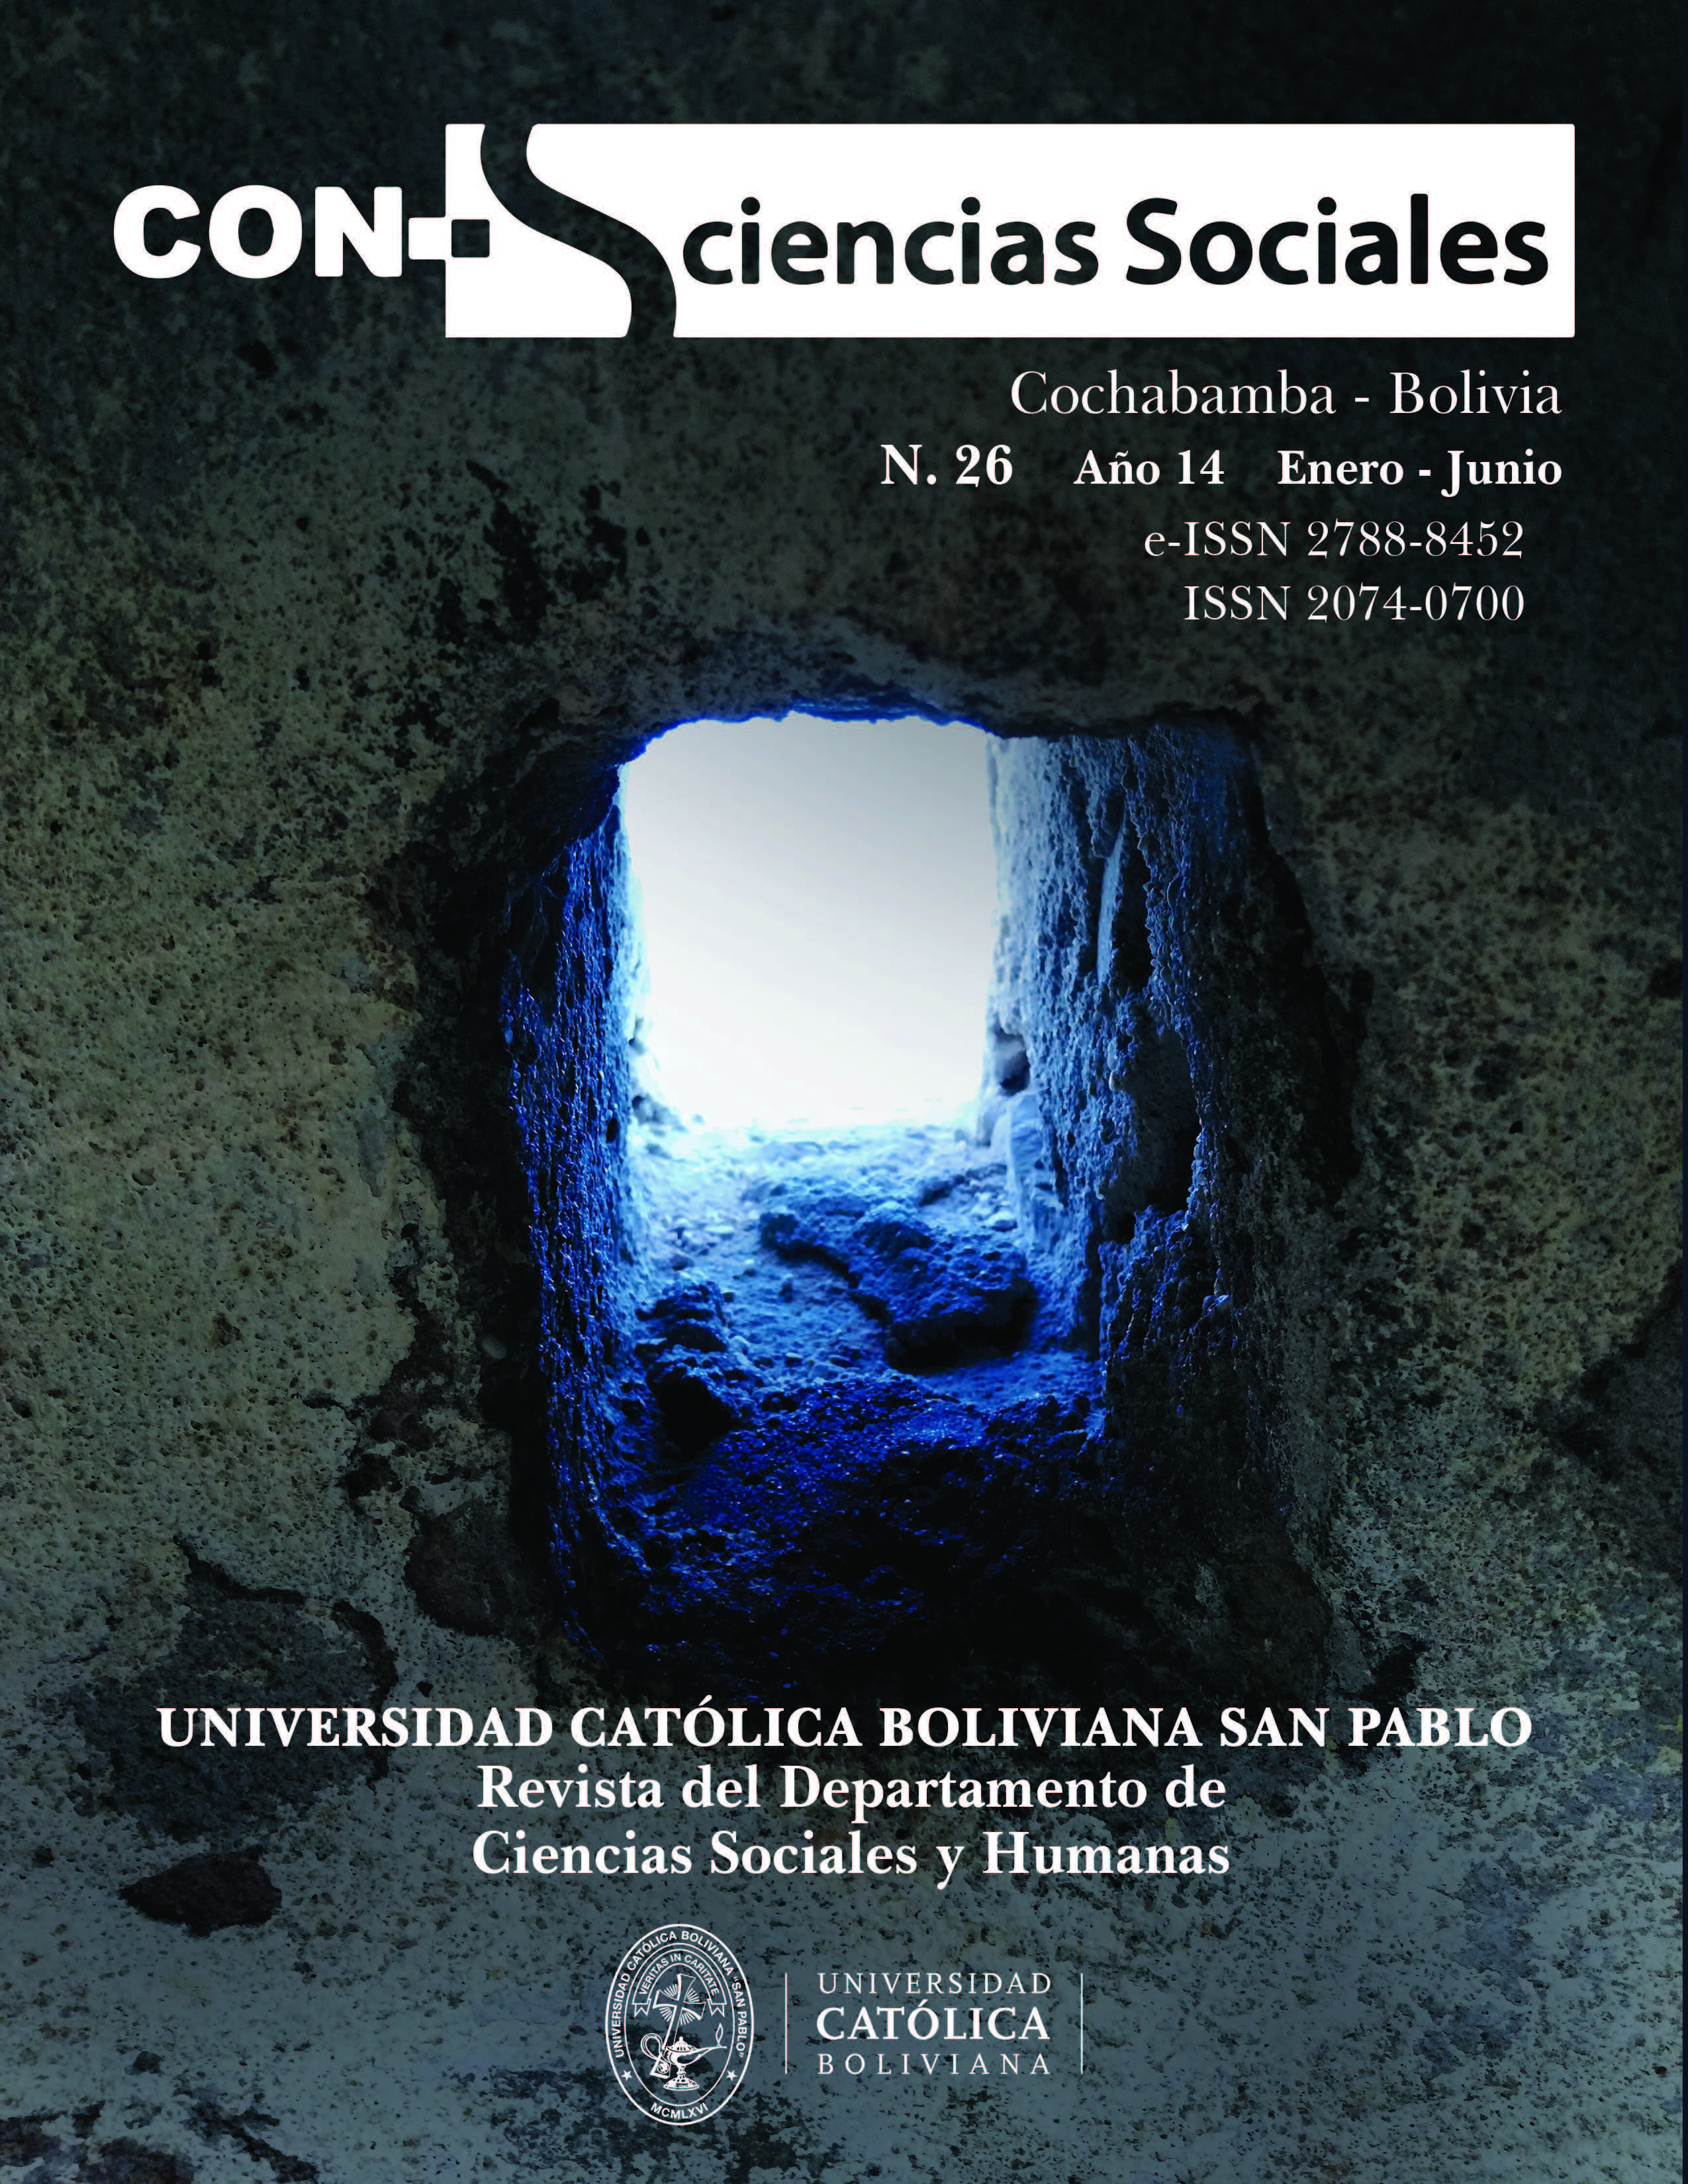 Revista Con-Sciencias Sociales N. 26